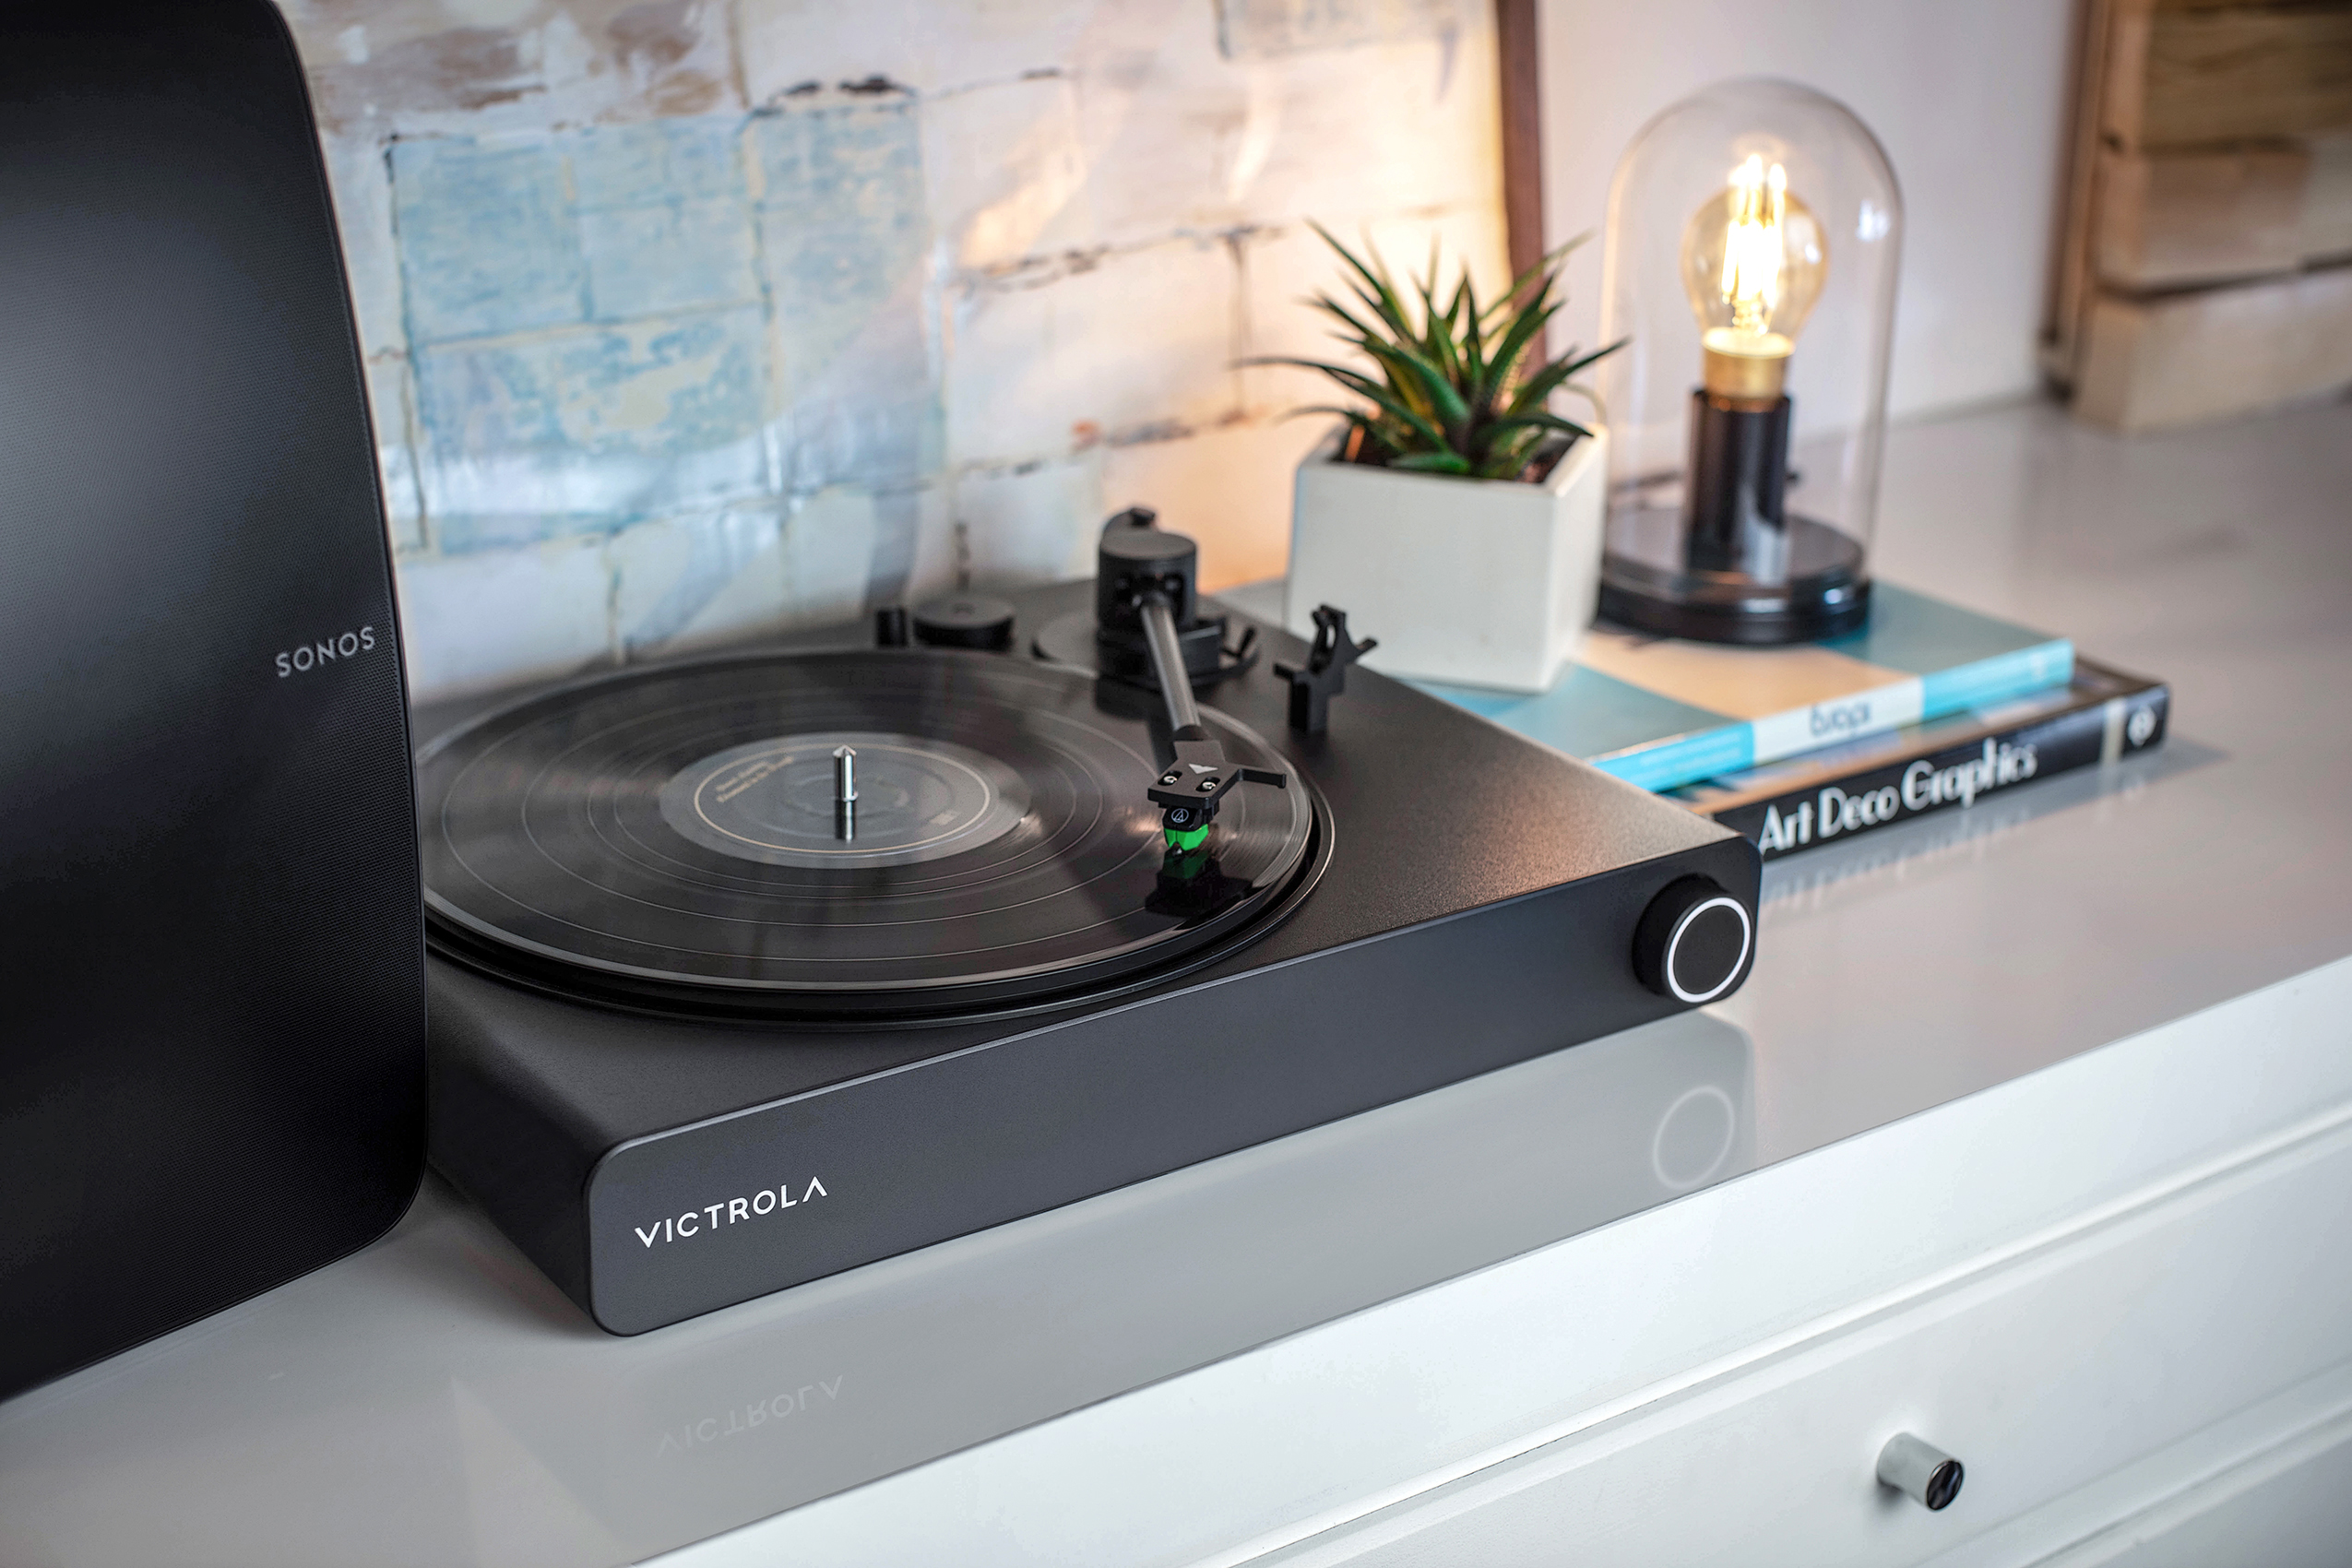 O toca-discos pronto para Vitrola Stream Onyx Sonos em um gabinete branco.